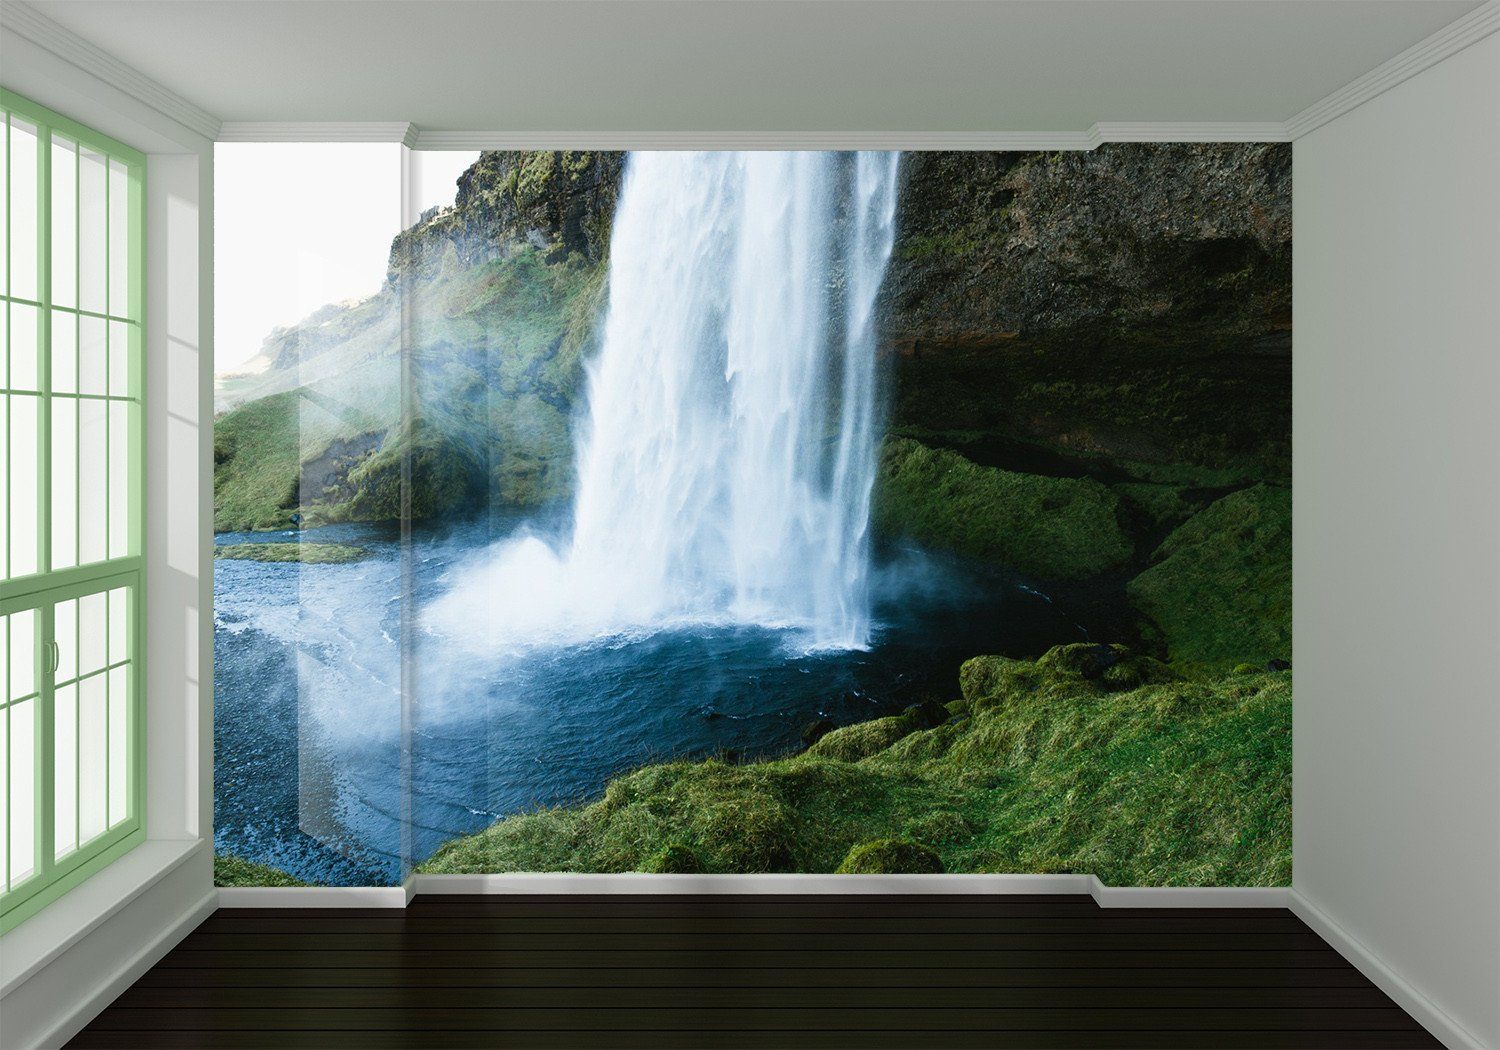 3D Waterfall Scenery 212 Wallpaper AJ Wallpaper 